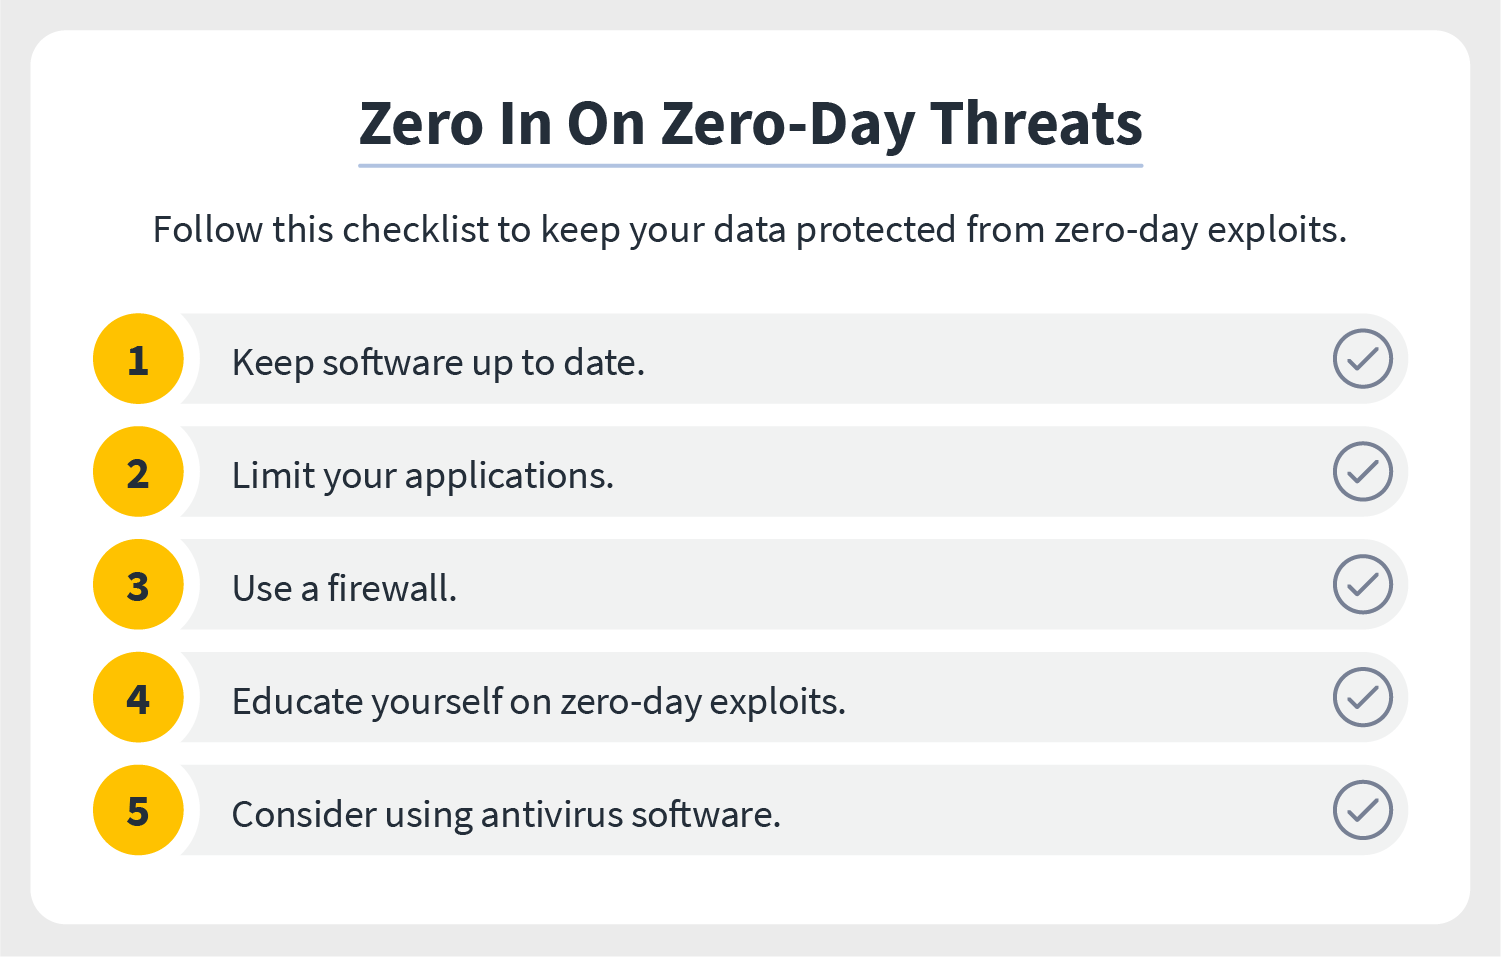 Zero in on zero day threats